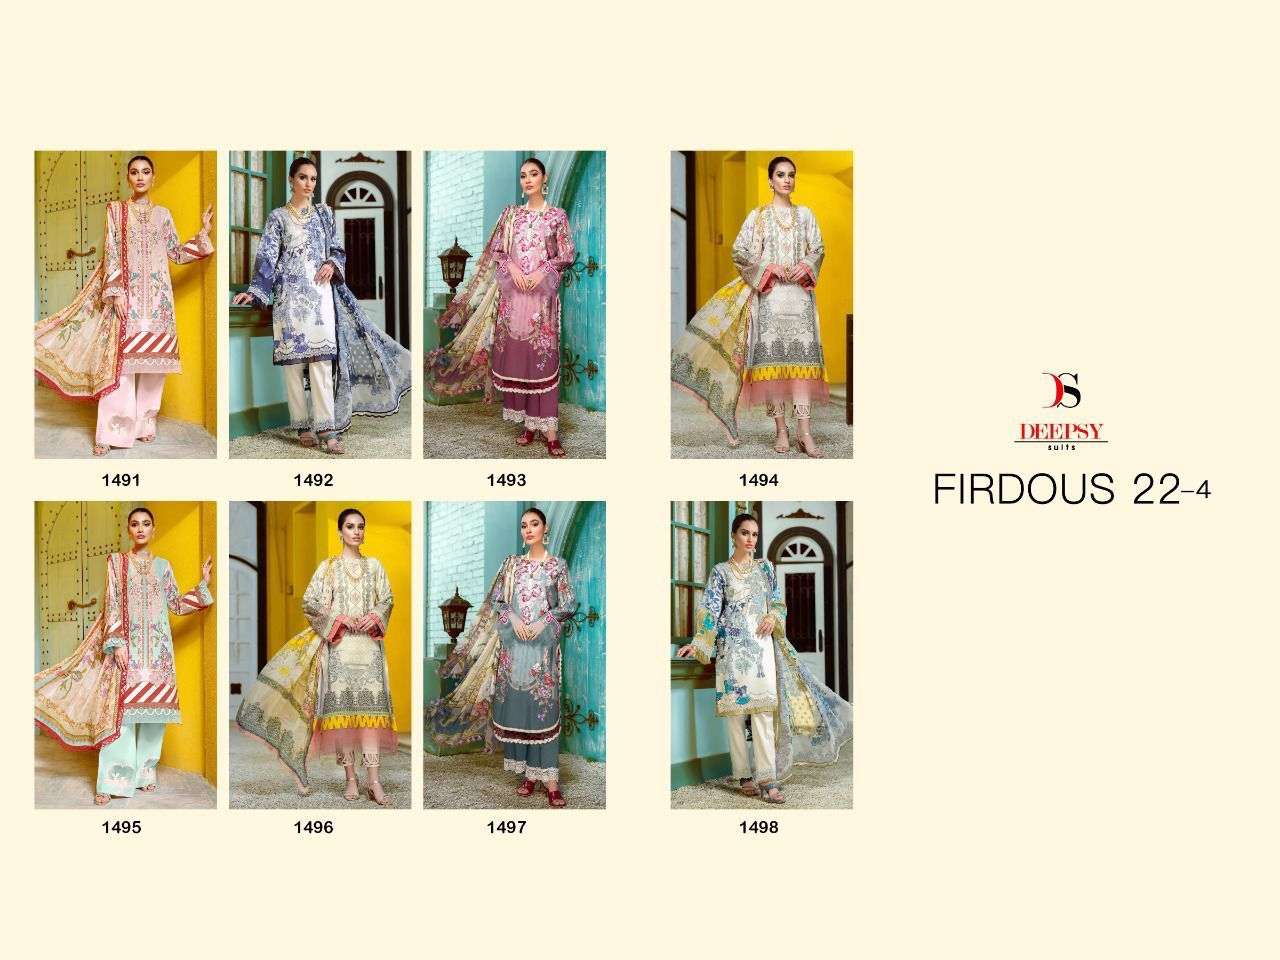 firdous 22 - 4 deepsy suits designer chiffon dupatta collection online wholesaler surat